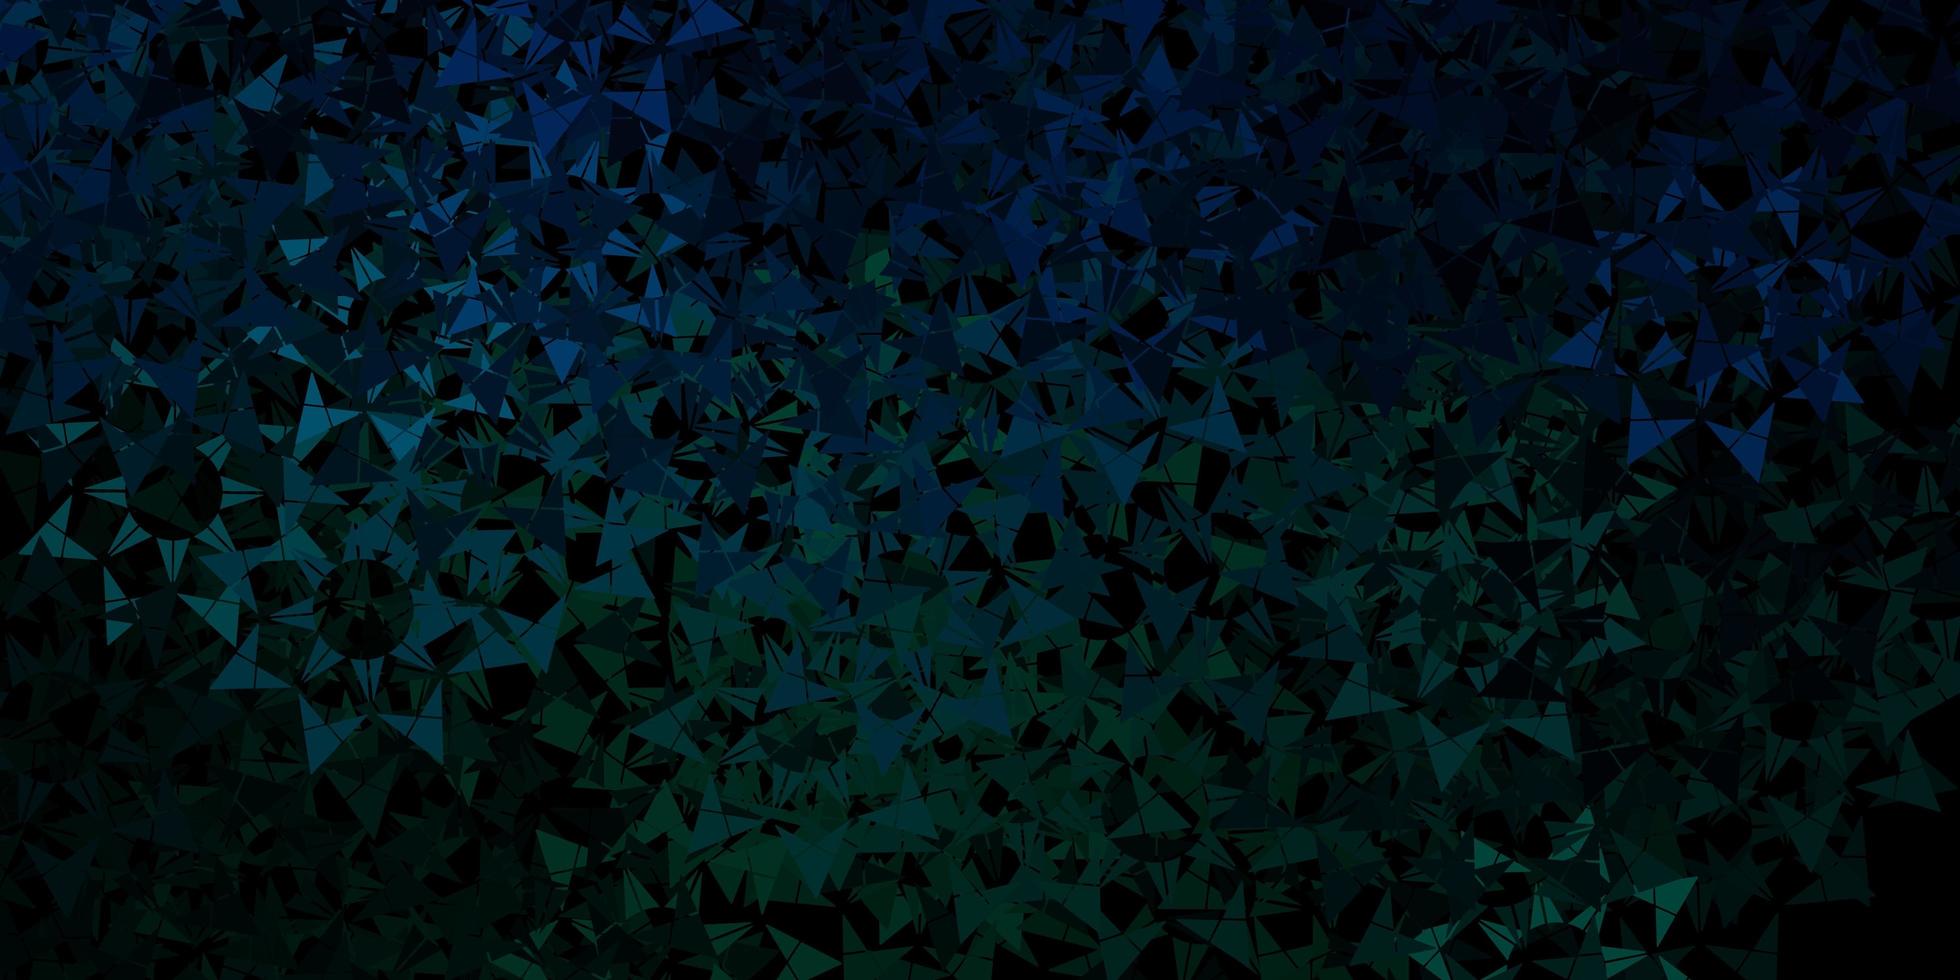 donkerblauwe vectorlay-out met lijnen, driehoeken. vector